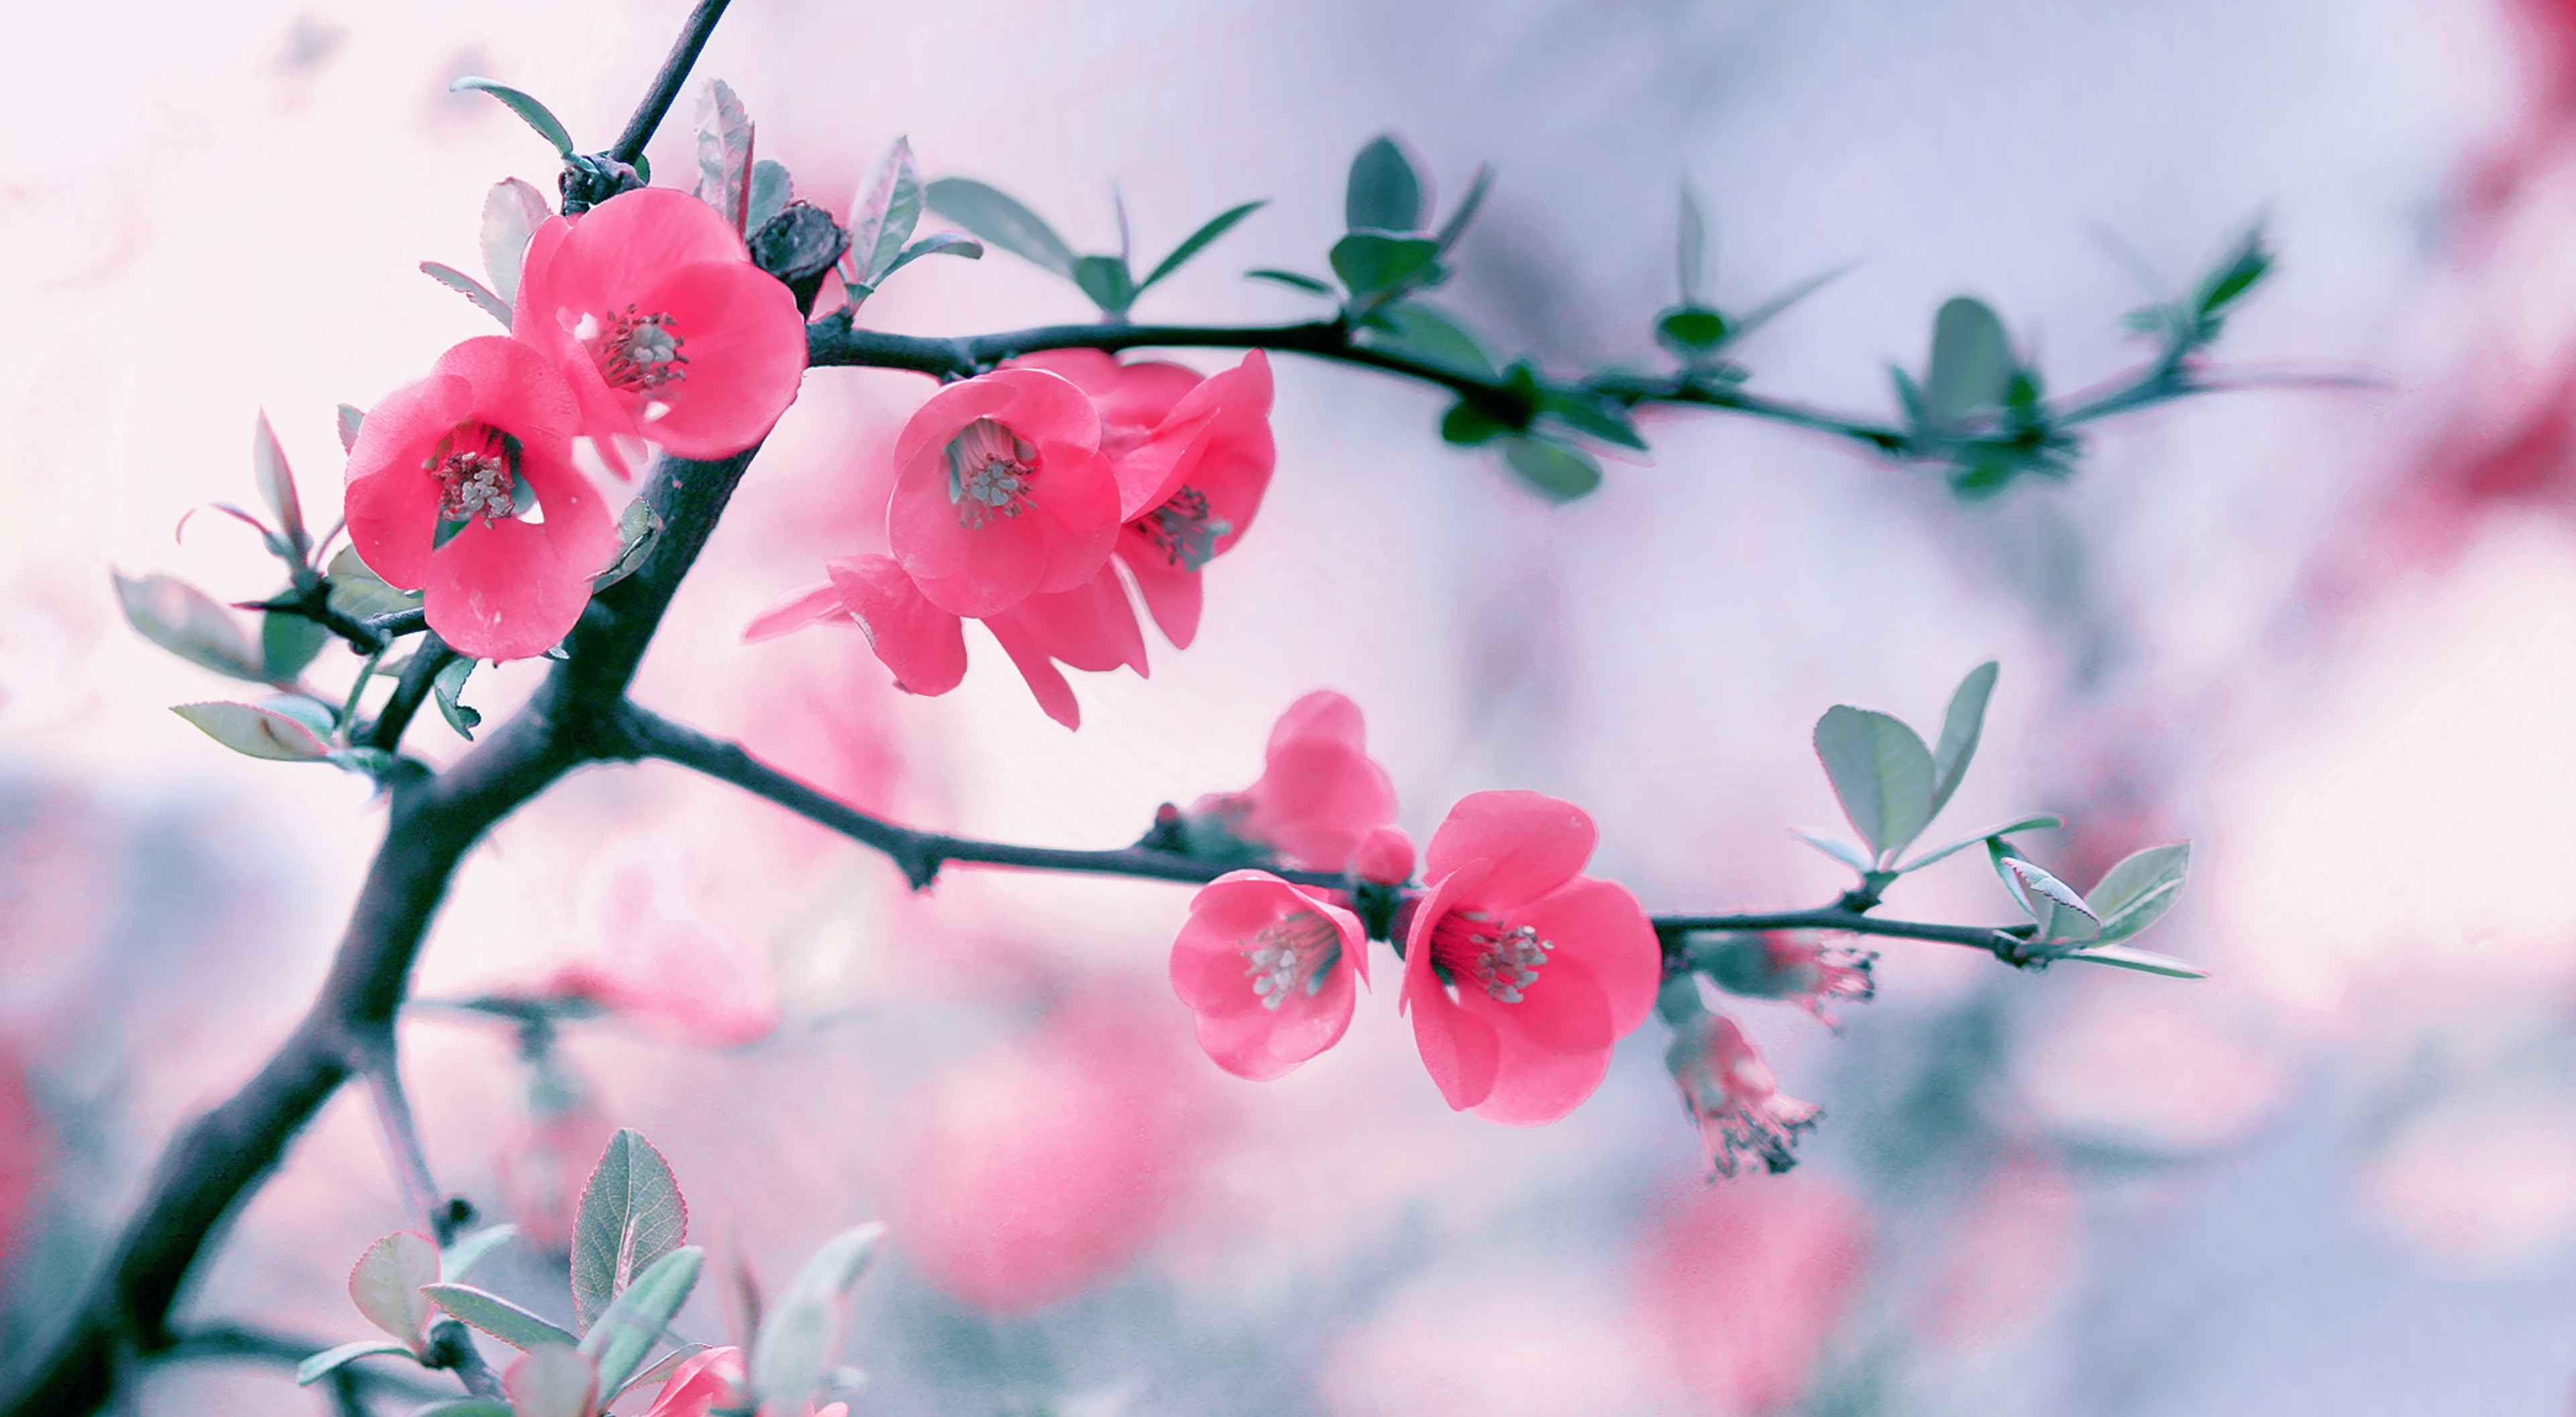 Фото весны красивые на заставку на телефон. Цветы на ветке. Ветка цветов. Ветка с розовыми цветами. Весенние картинки на рабочий стол.